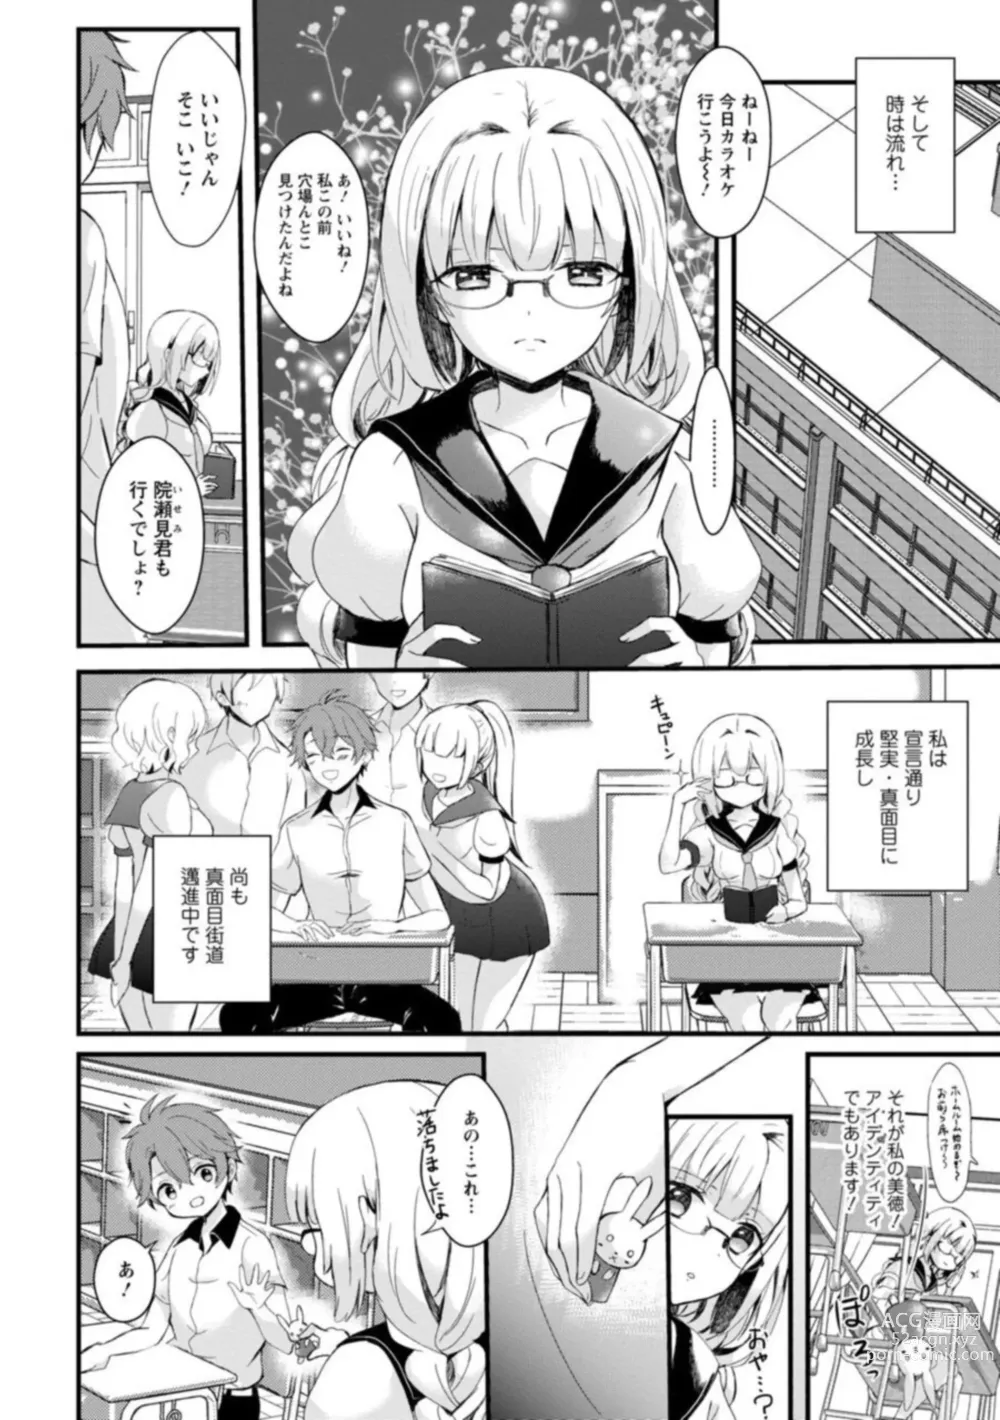 Page 6 of manga Inma no Torihiki ~ Shojonanoni oku made Sosoga re Chau! Inma no ai wa Atsuku Torokete ~ 1-2